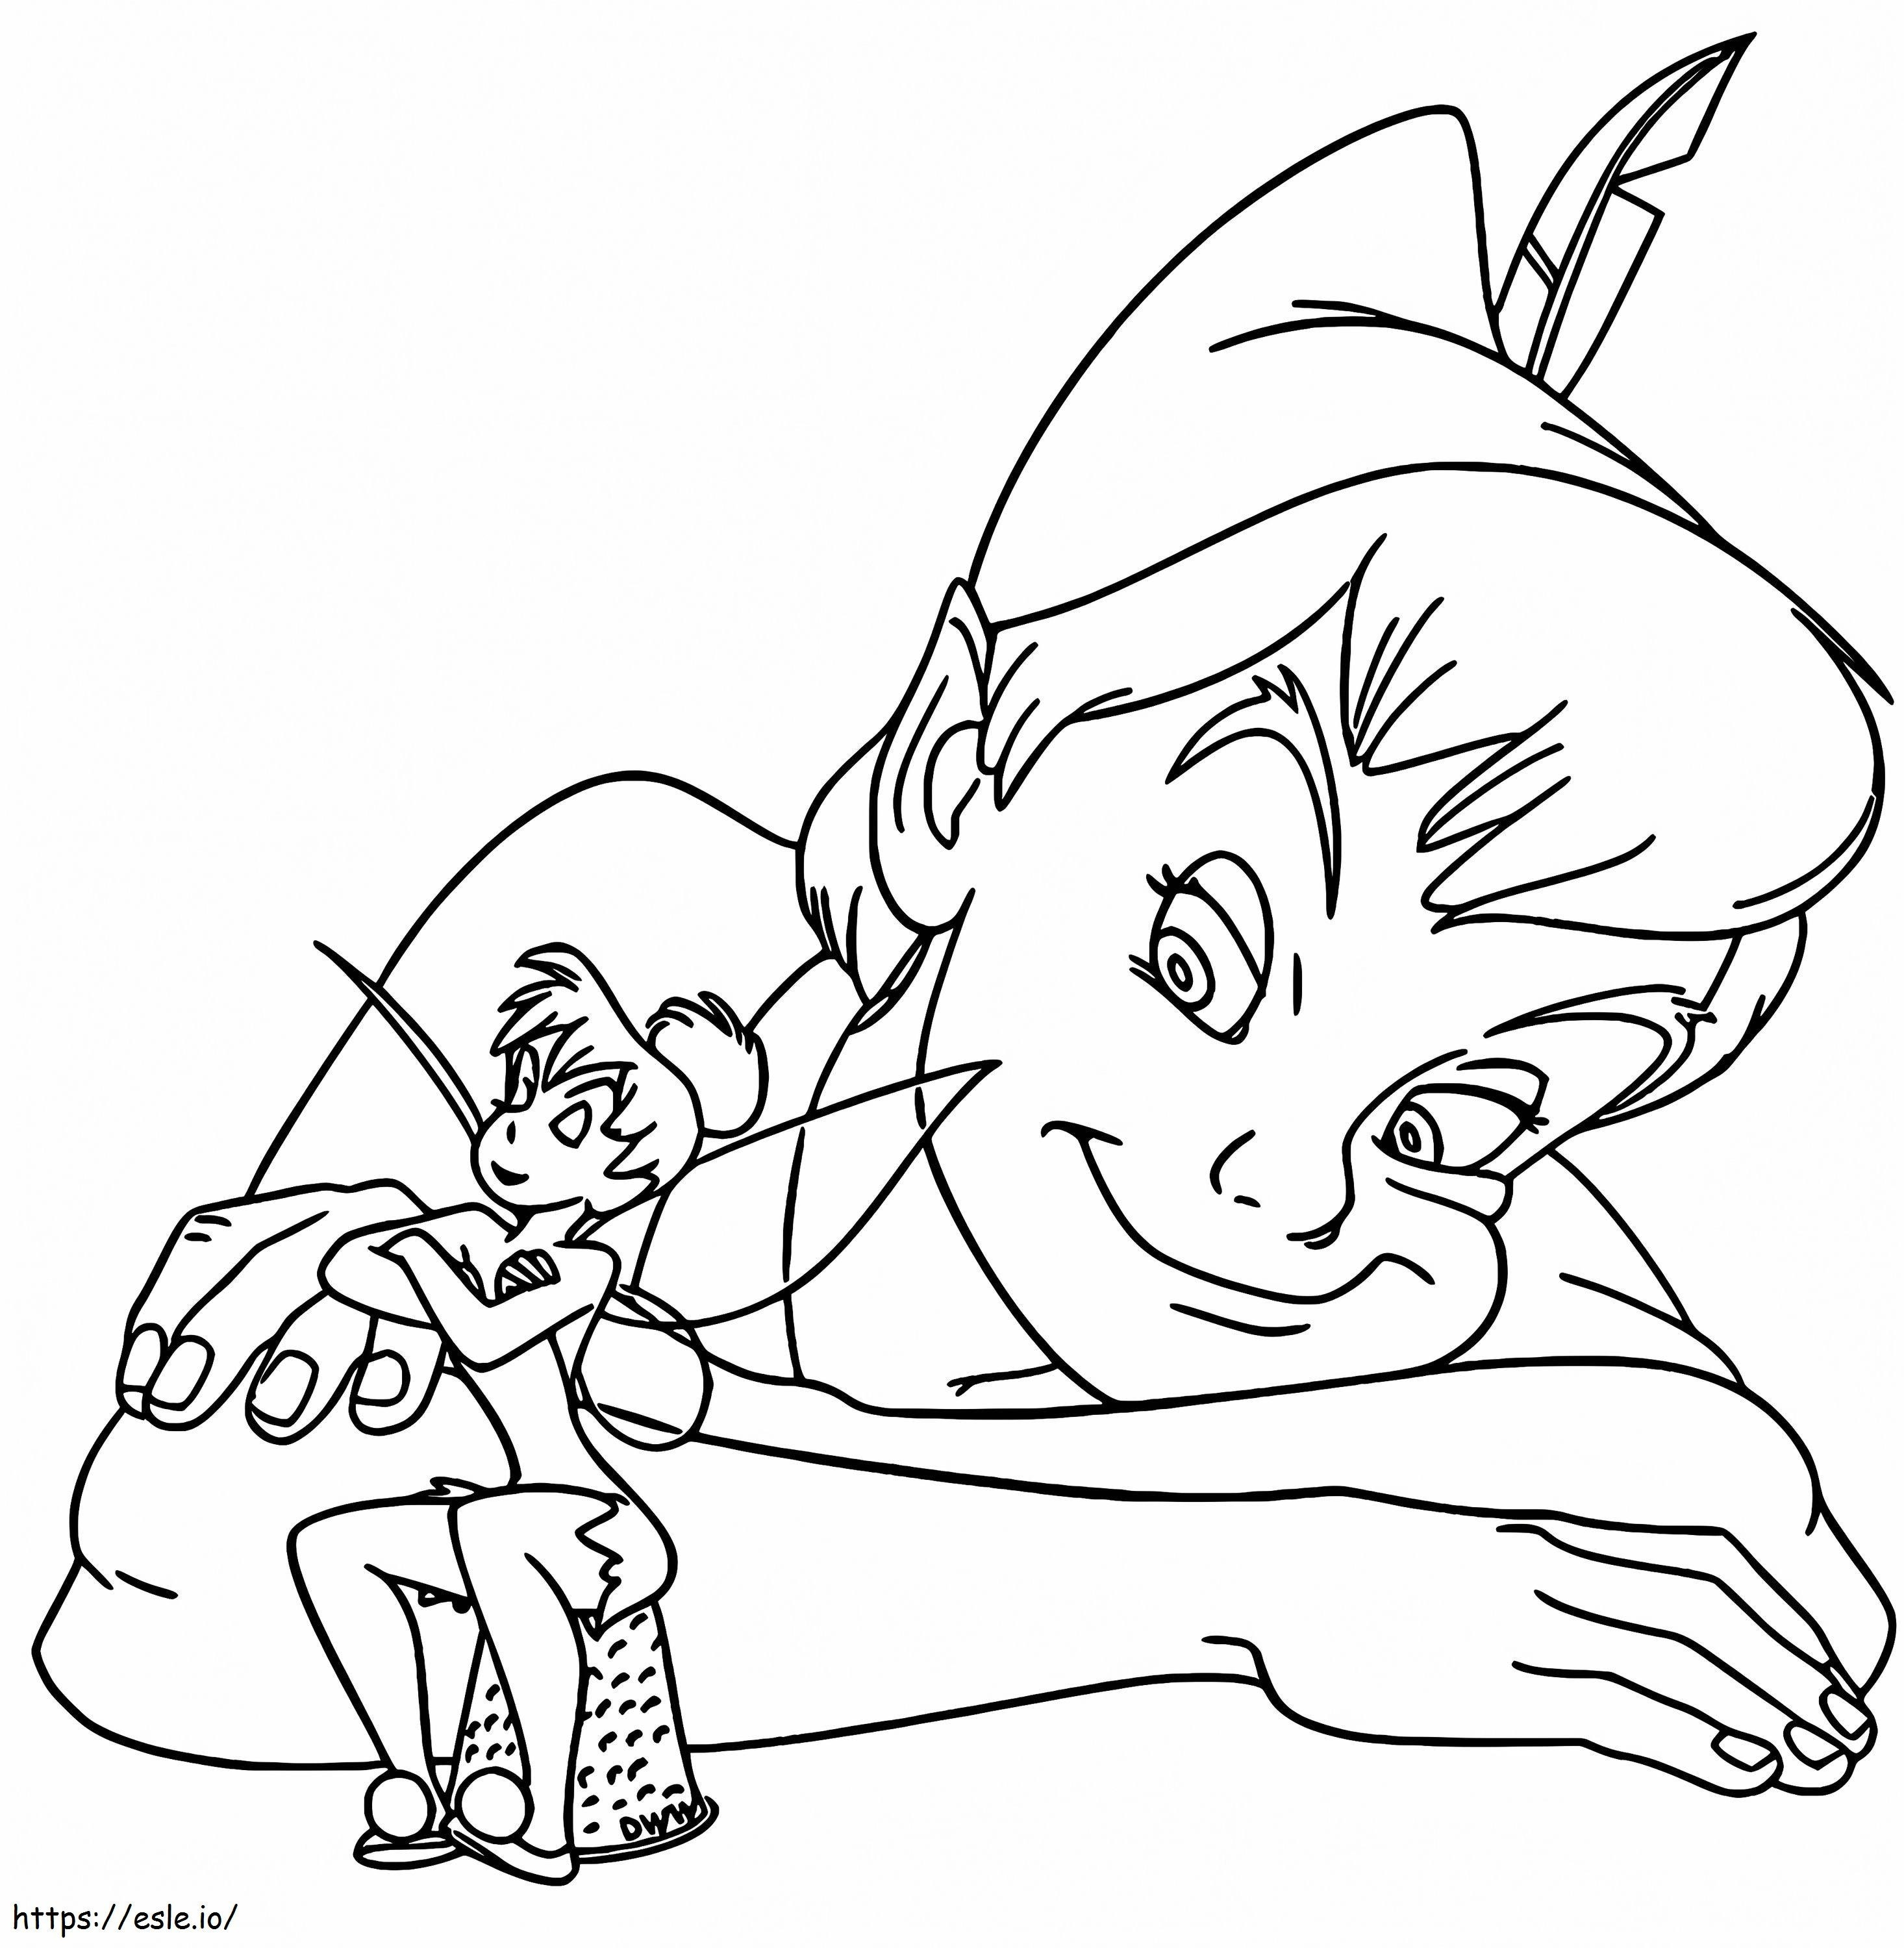 1545725905 Kuva Tinkerbell To Color Kelvollinen kuva Tinkerbell To Color Kelvollinen Peter Pan ja Kuva Tinkerbell To Color värityskuva